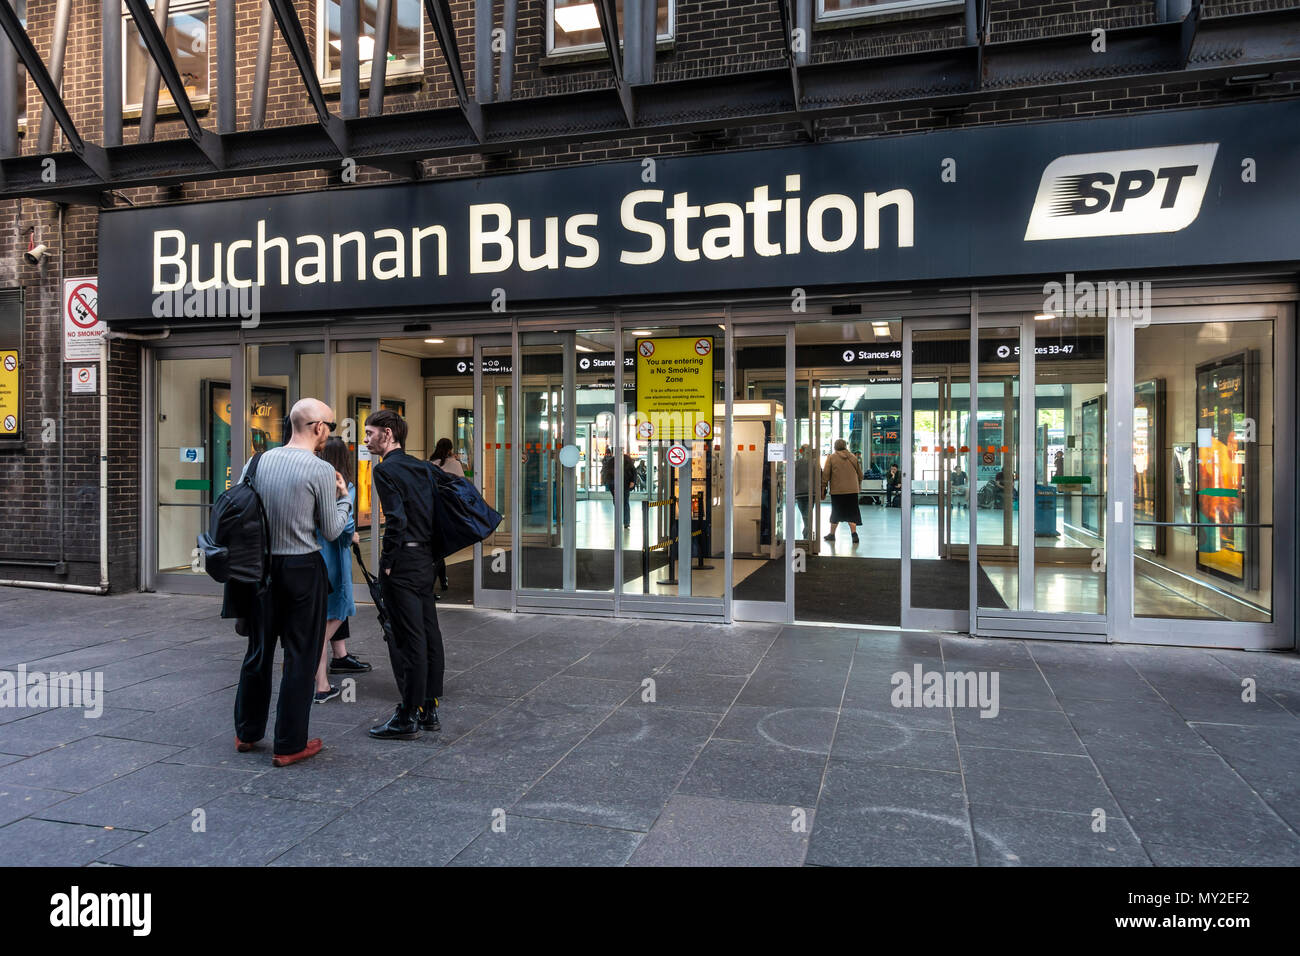 Unterzeichnet Eingang von der Buchanan Bus Station, der Busbahnhof in Glasgow, Schottland, Großbritannien, Leute, Reden, Passagiere, die Türen öffnen. Stockfoto